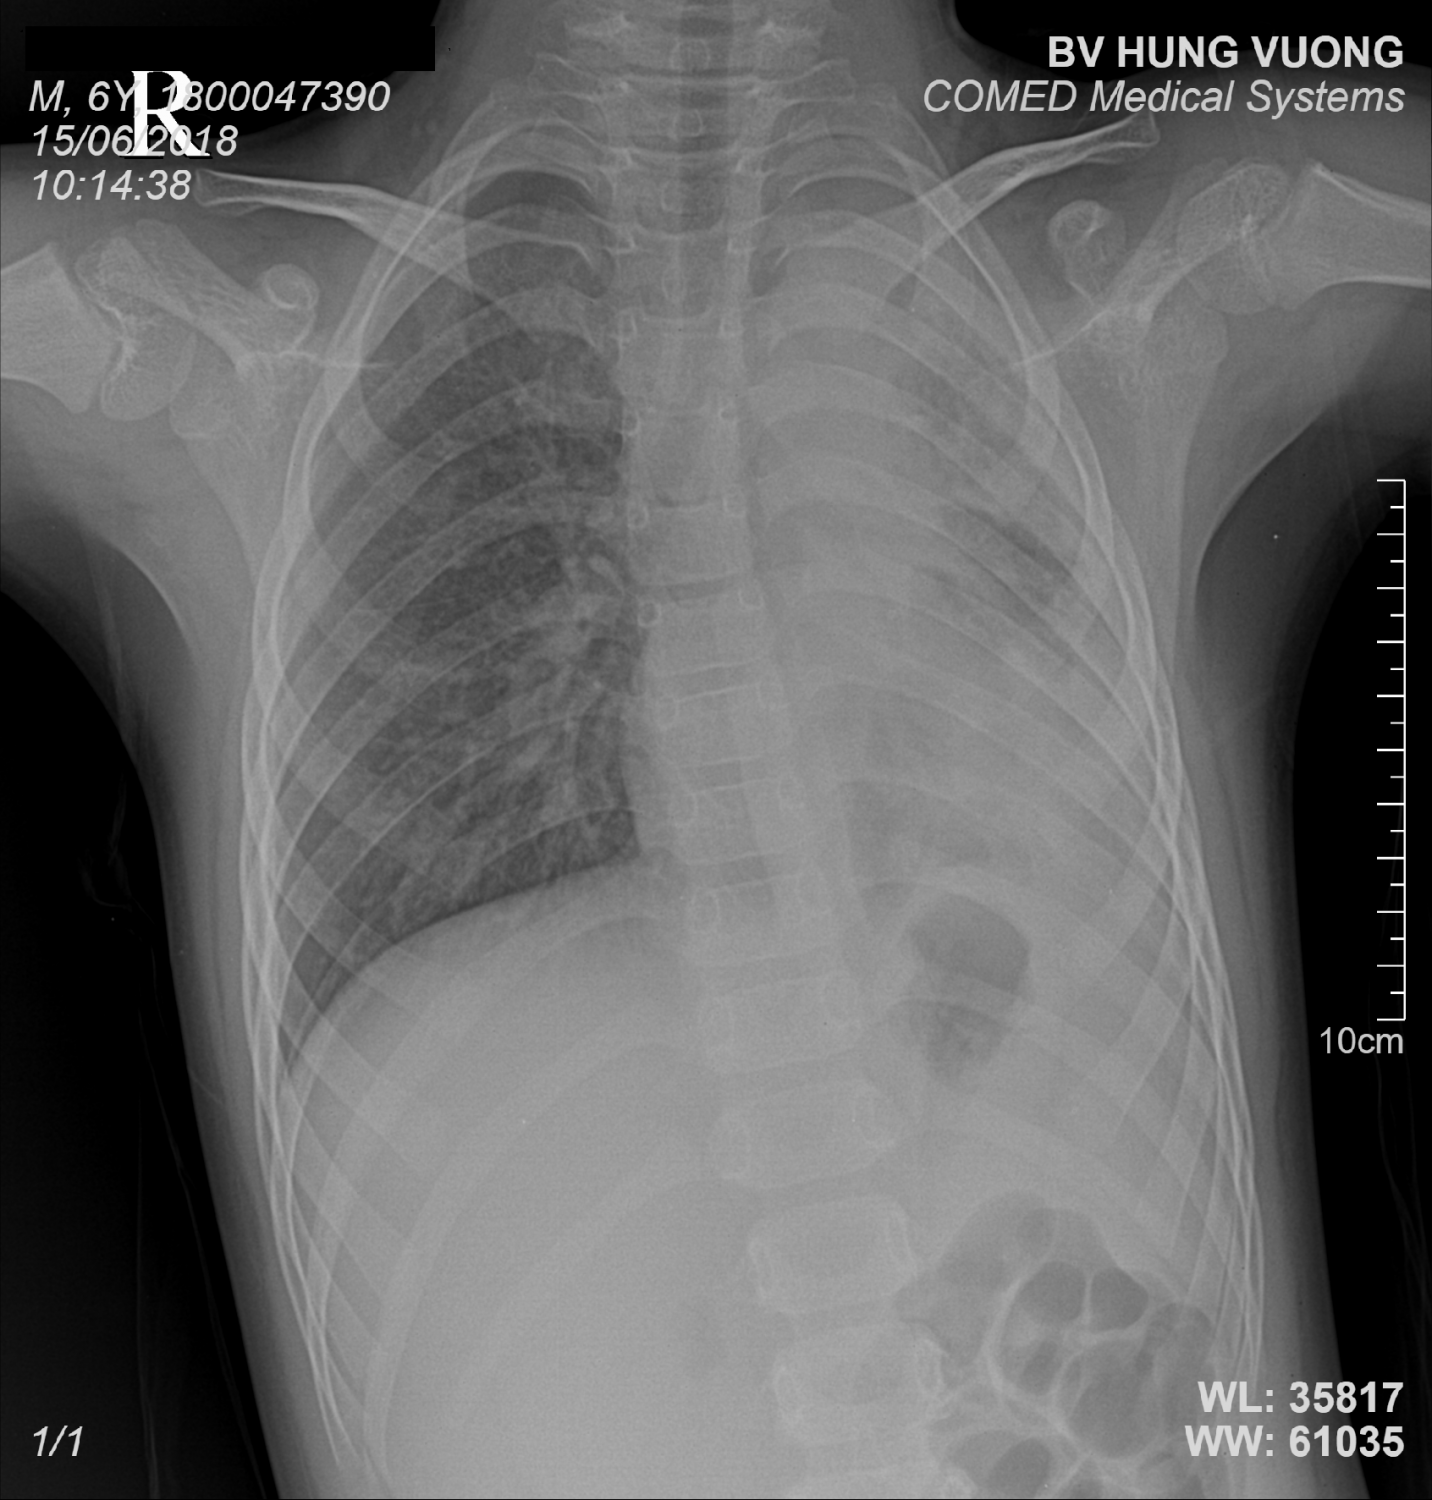 Hình ảnh XQ phổi cho thấy nhu mô phổi bên trái của trẻ bị xẹp